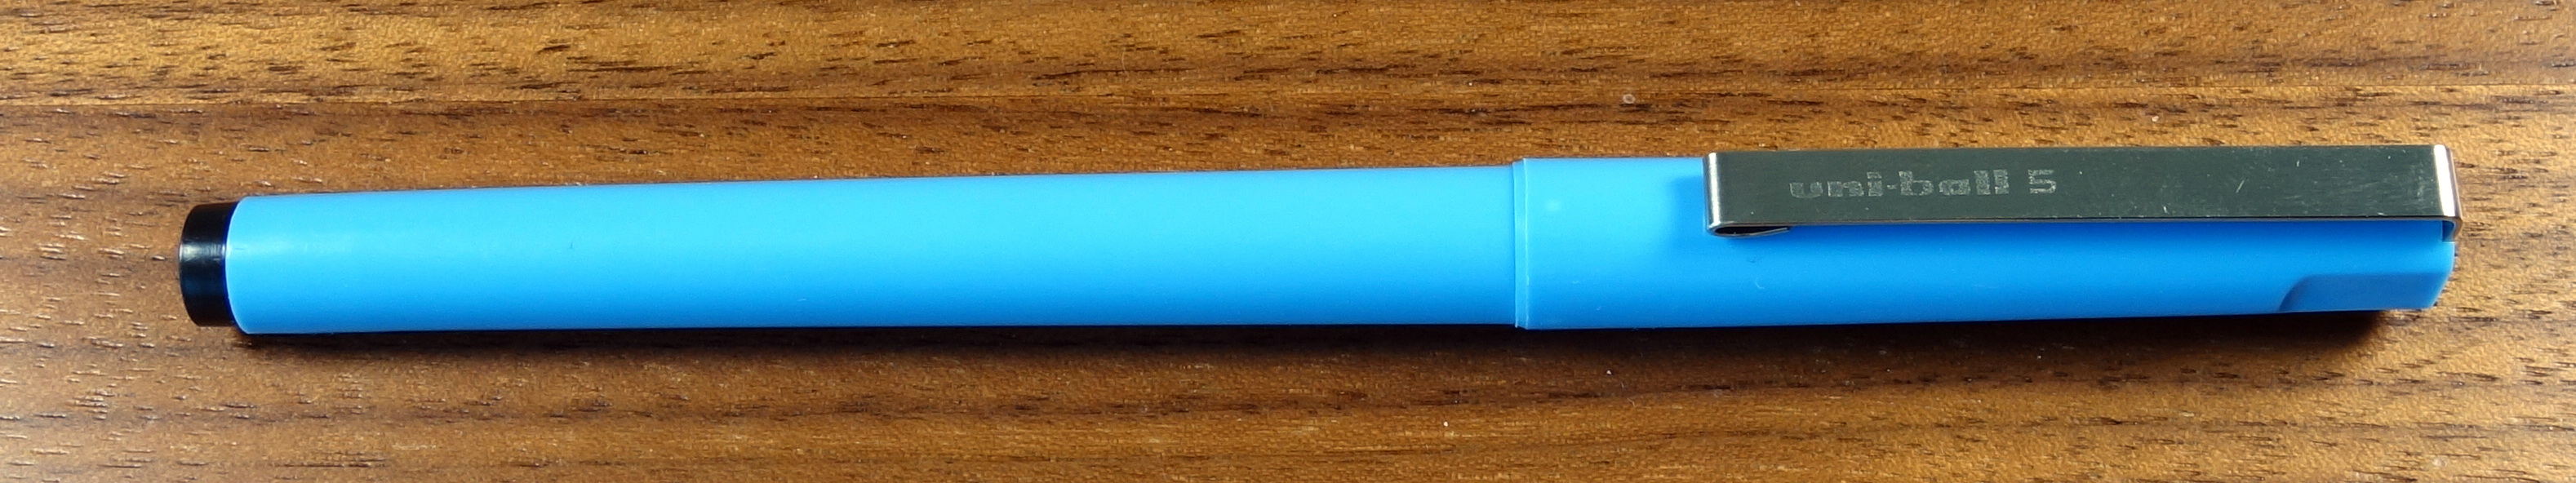 Uni-Ball 5 Roller Ball Pen